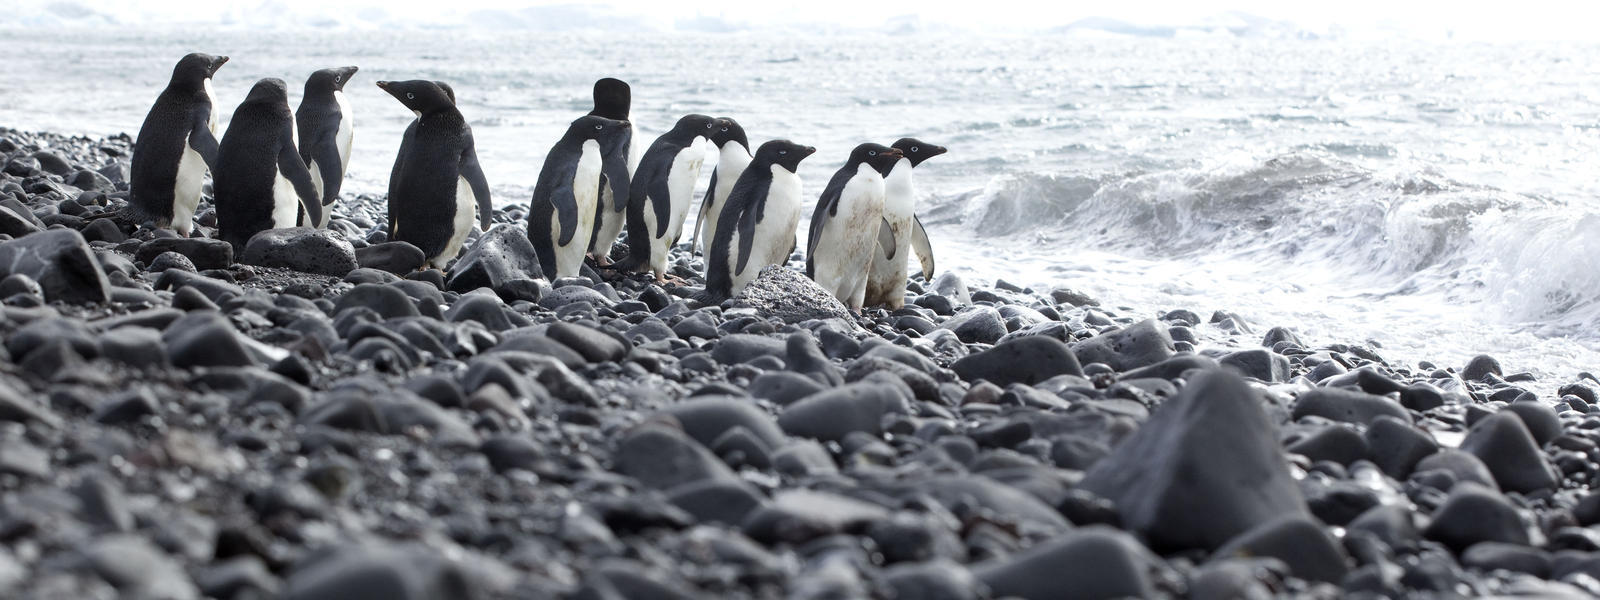 Penguins together